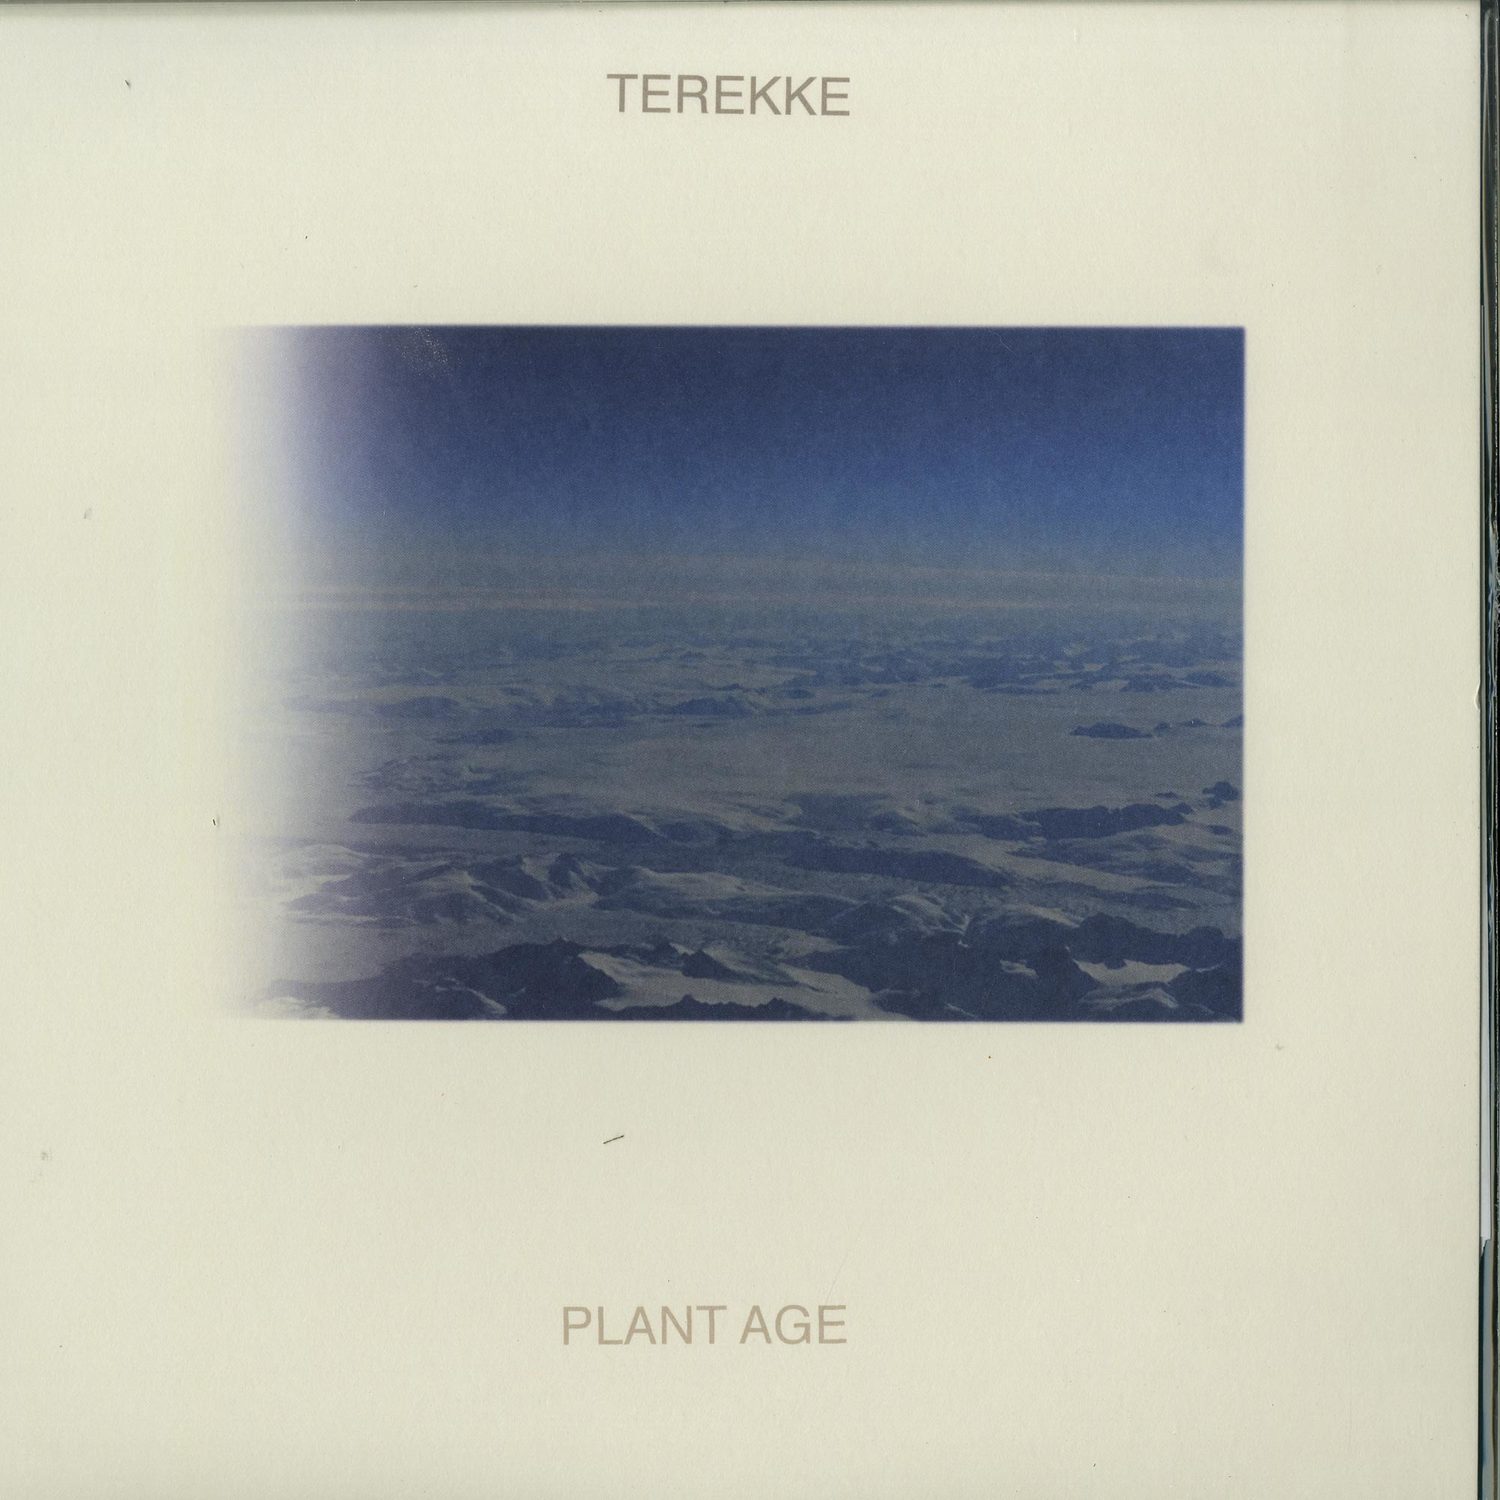 Terekke - PLANT AGE 